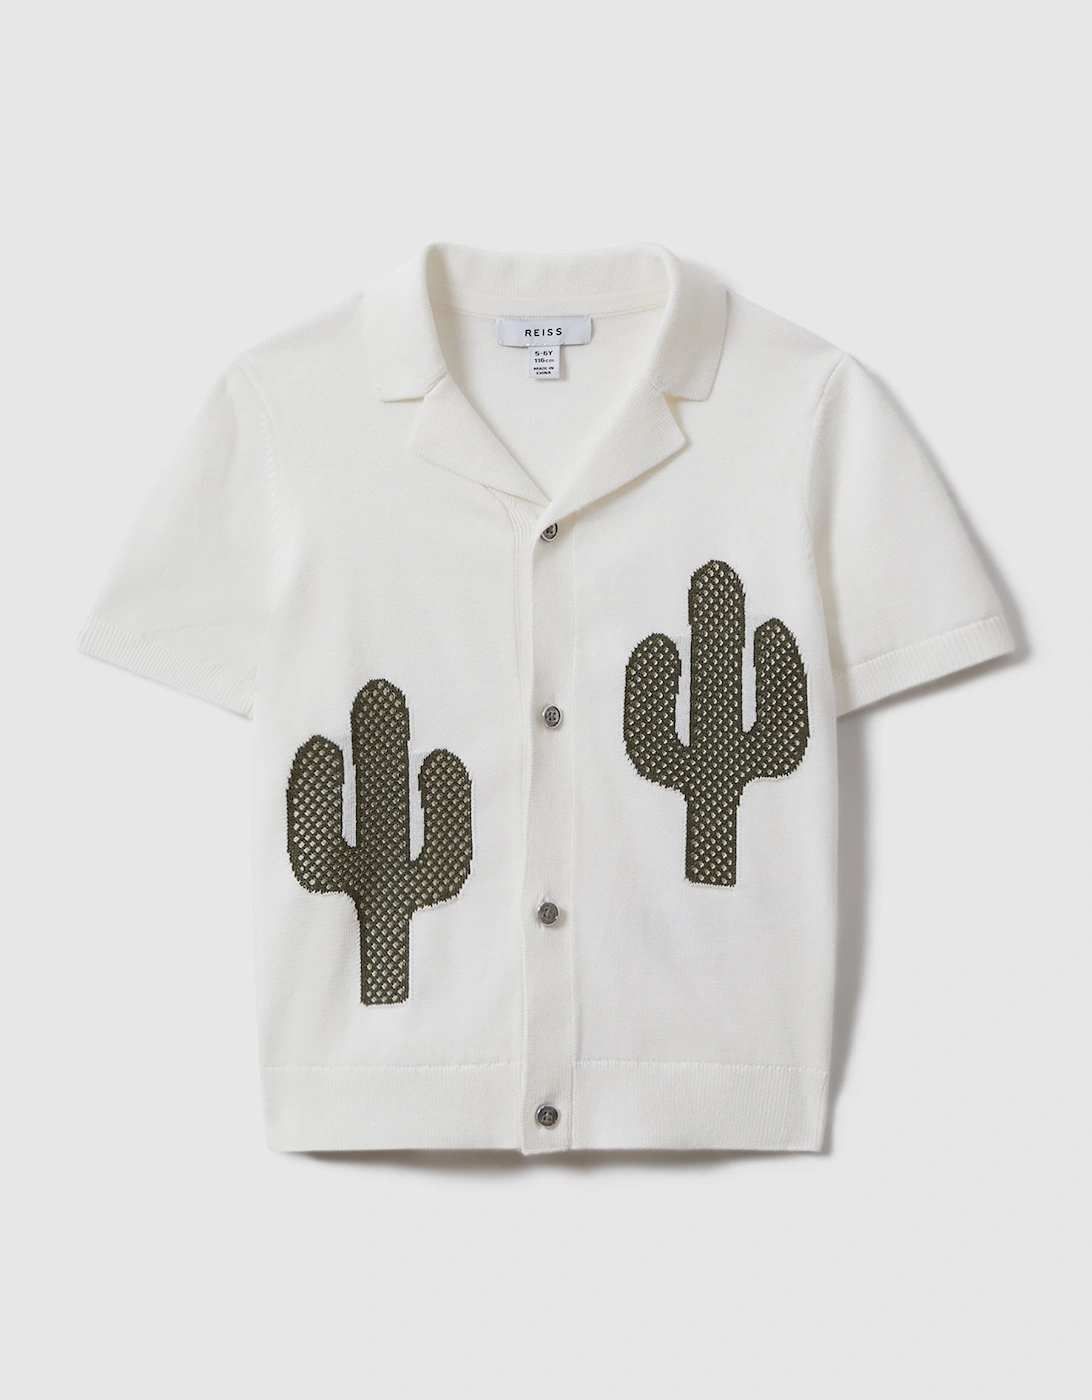 Knitted Cactus Cuban Collar Shirt, 2 of 1